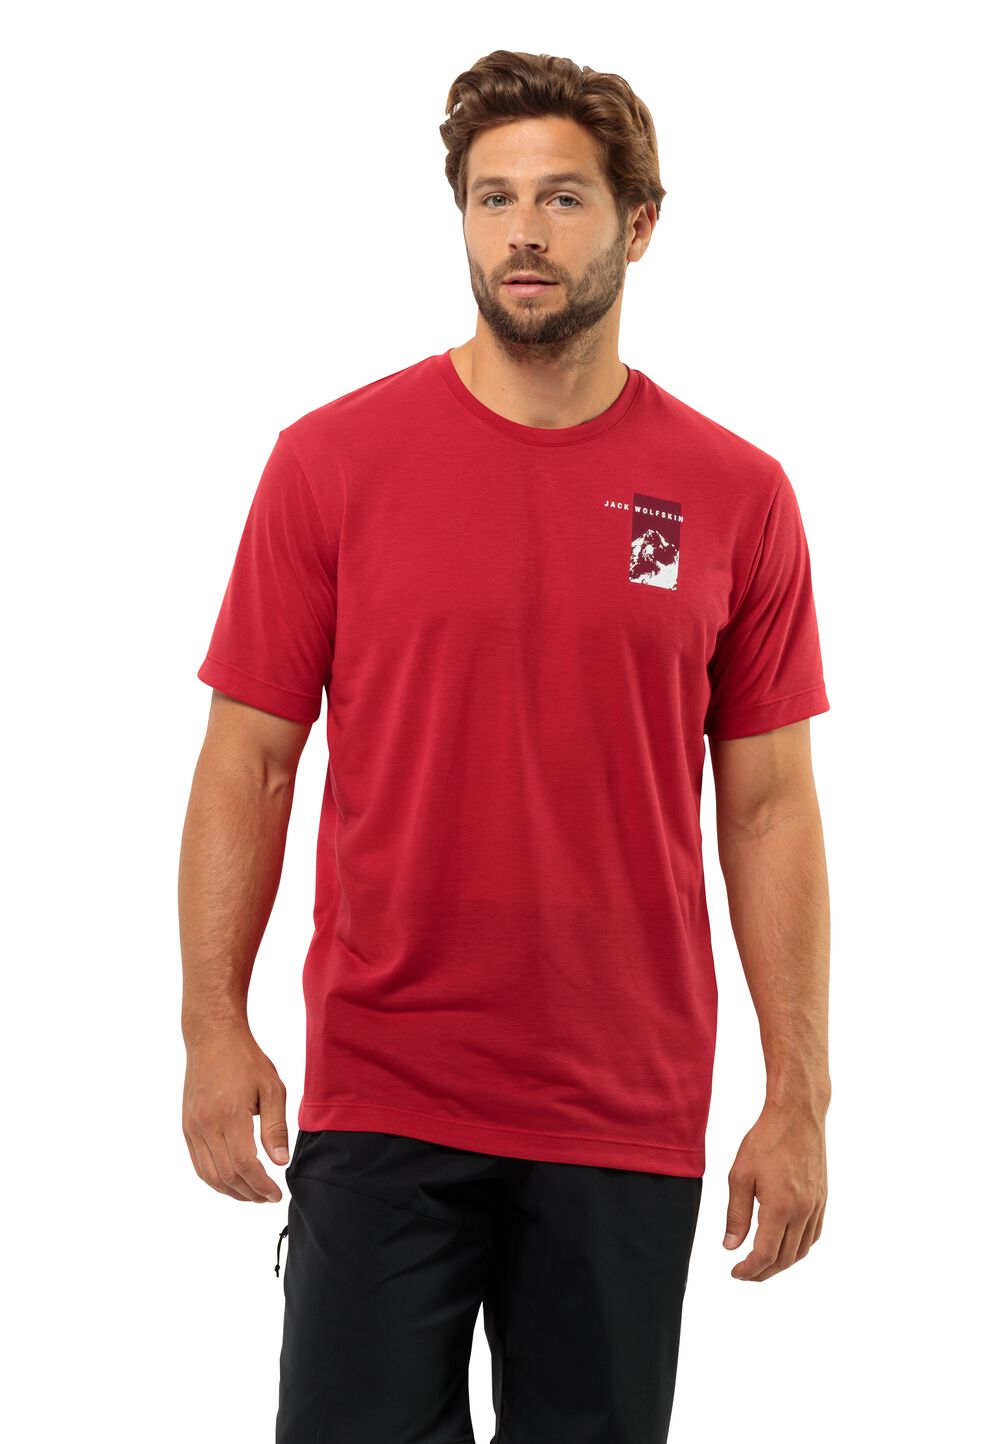 Jack Wolfskin Vonnan S S Graphic T-Shirt Men Functioneel shirt Heren S rood red glow